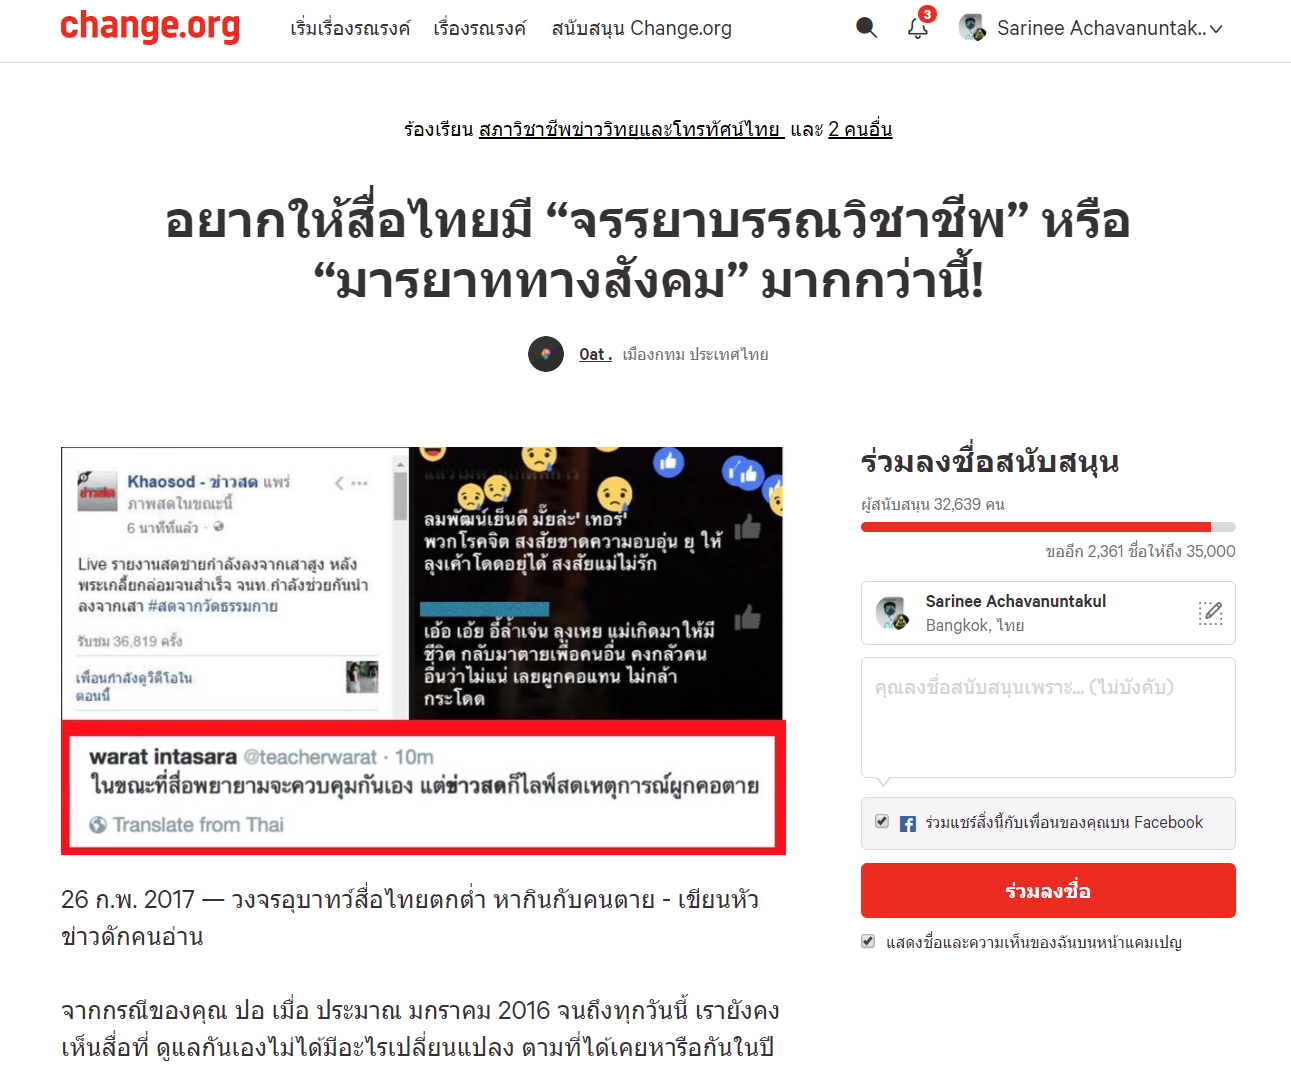 แคมเปญรณรงค์ "อยากให้สื่อไทยมีจรรยาบรรณมากกว่านี้" ที่มาภาพ: https://www.change.org/p/ขอให้สื่อไทยมี-จรรยาบรรณ-มารยาททางสังคม-มากกว่านี้-khaosodonline-ลงชื่อสนับสนุน